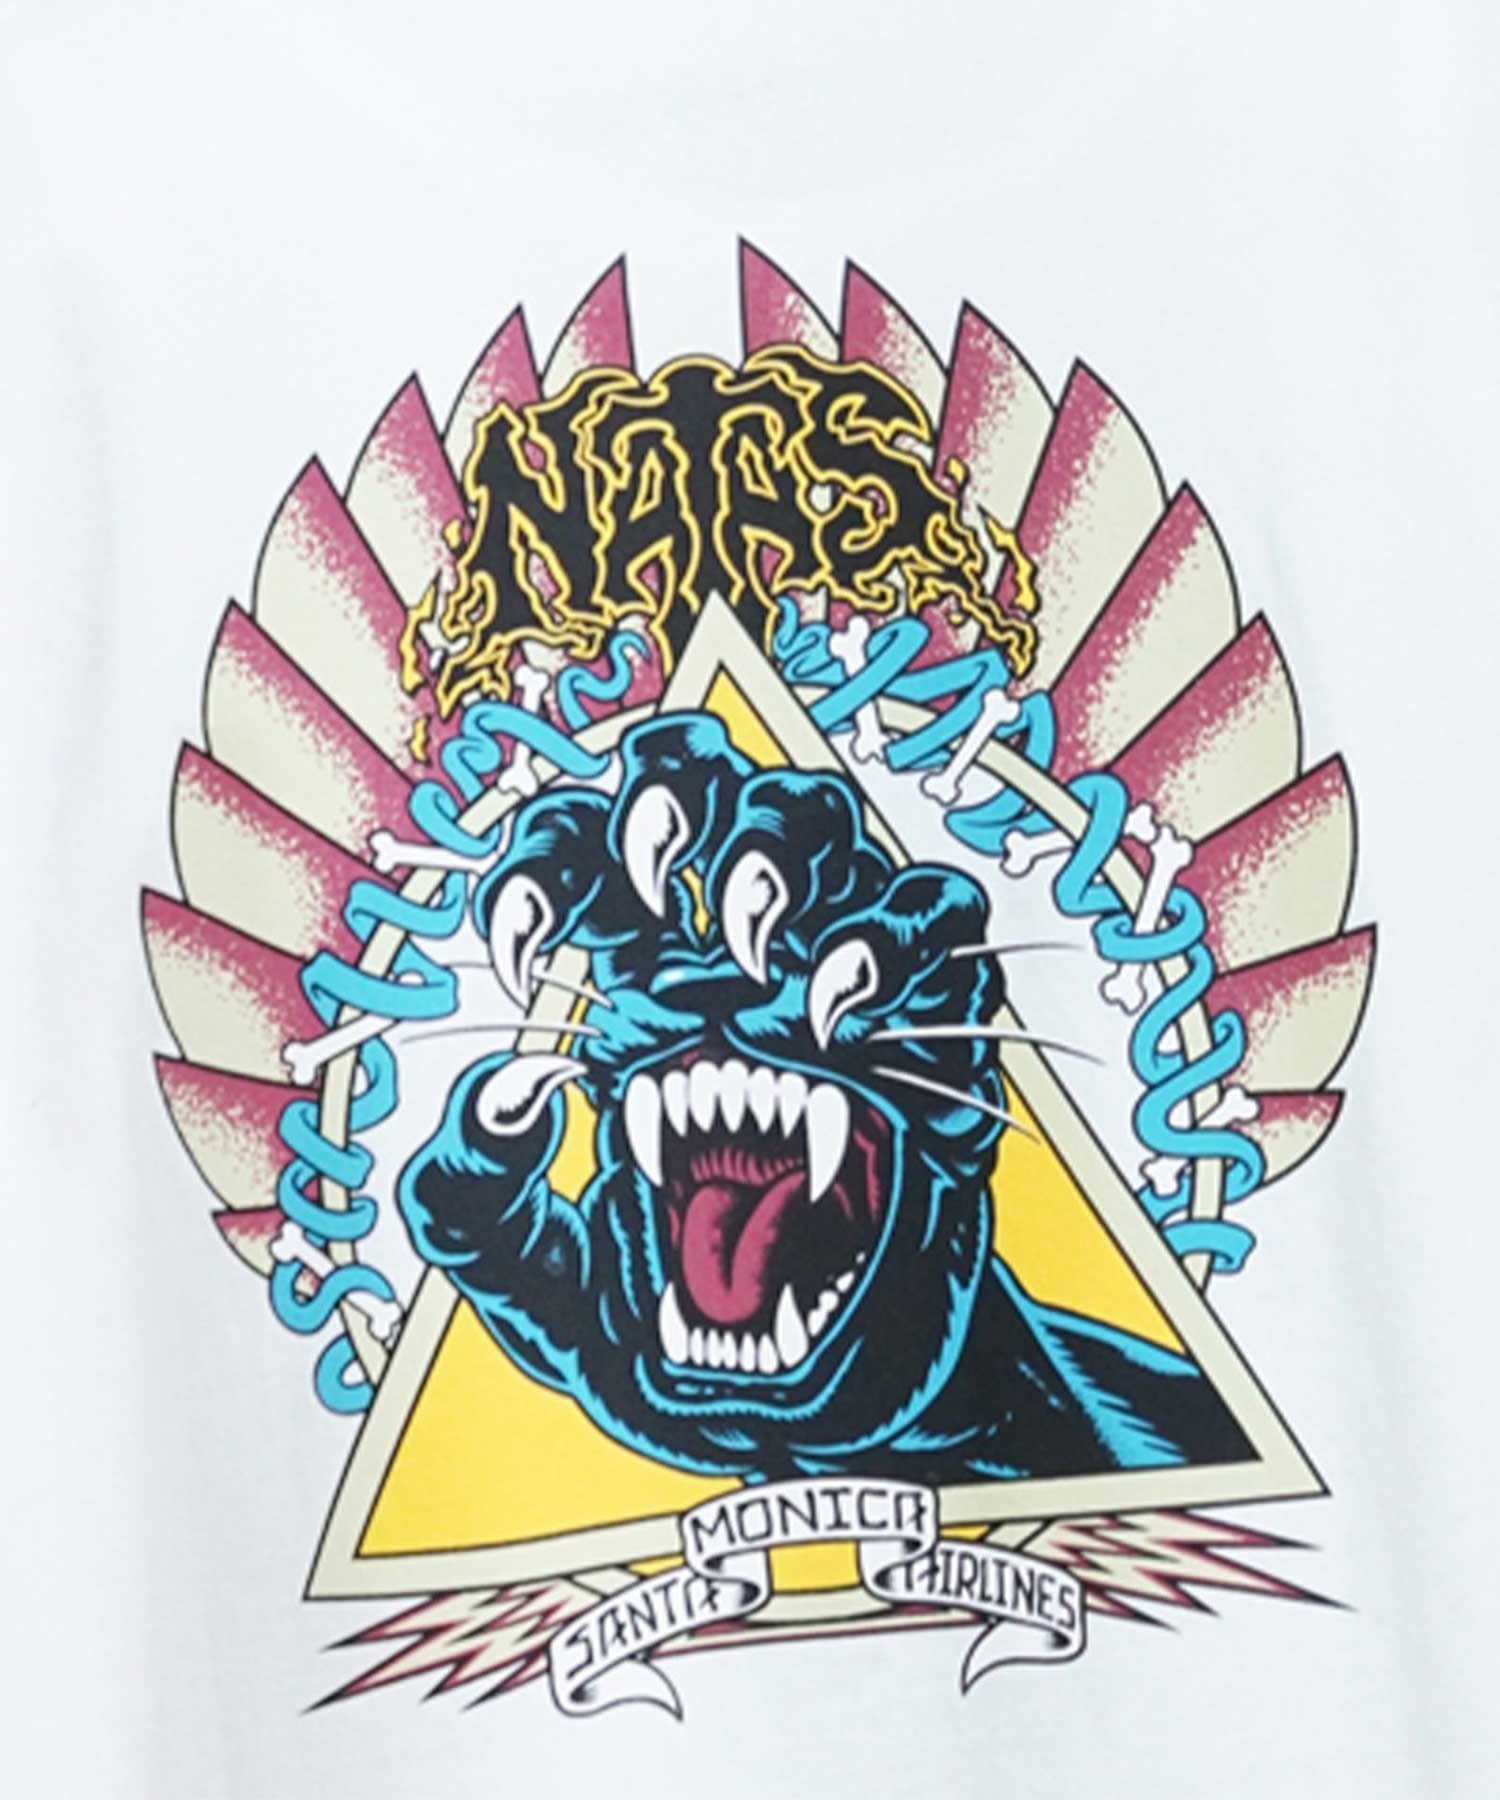 【ムラサキスポーツ限定】 SANTACRUZ サンタクルーズ Natas Screaming Panther S S Tee メンズ 半袖 Tシャツ 502241414(WHITE-M)